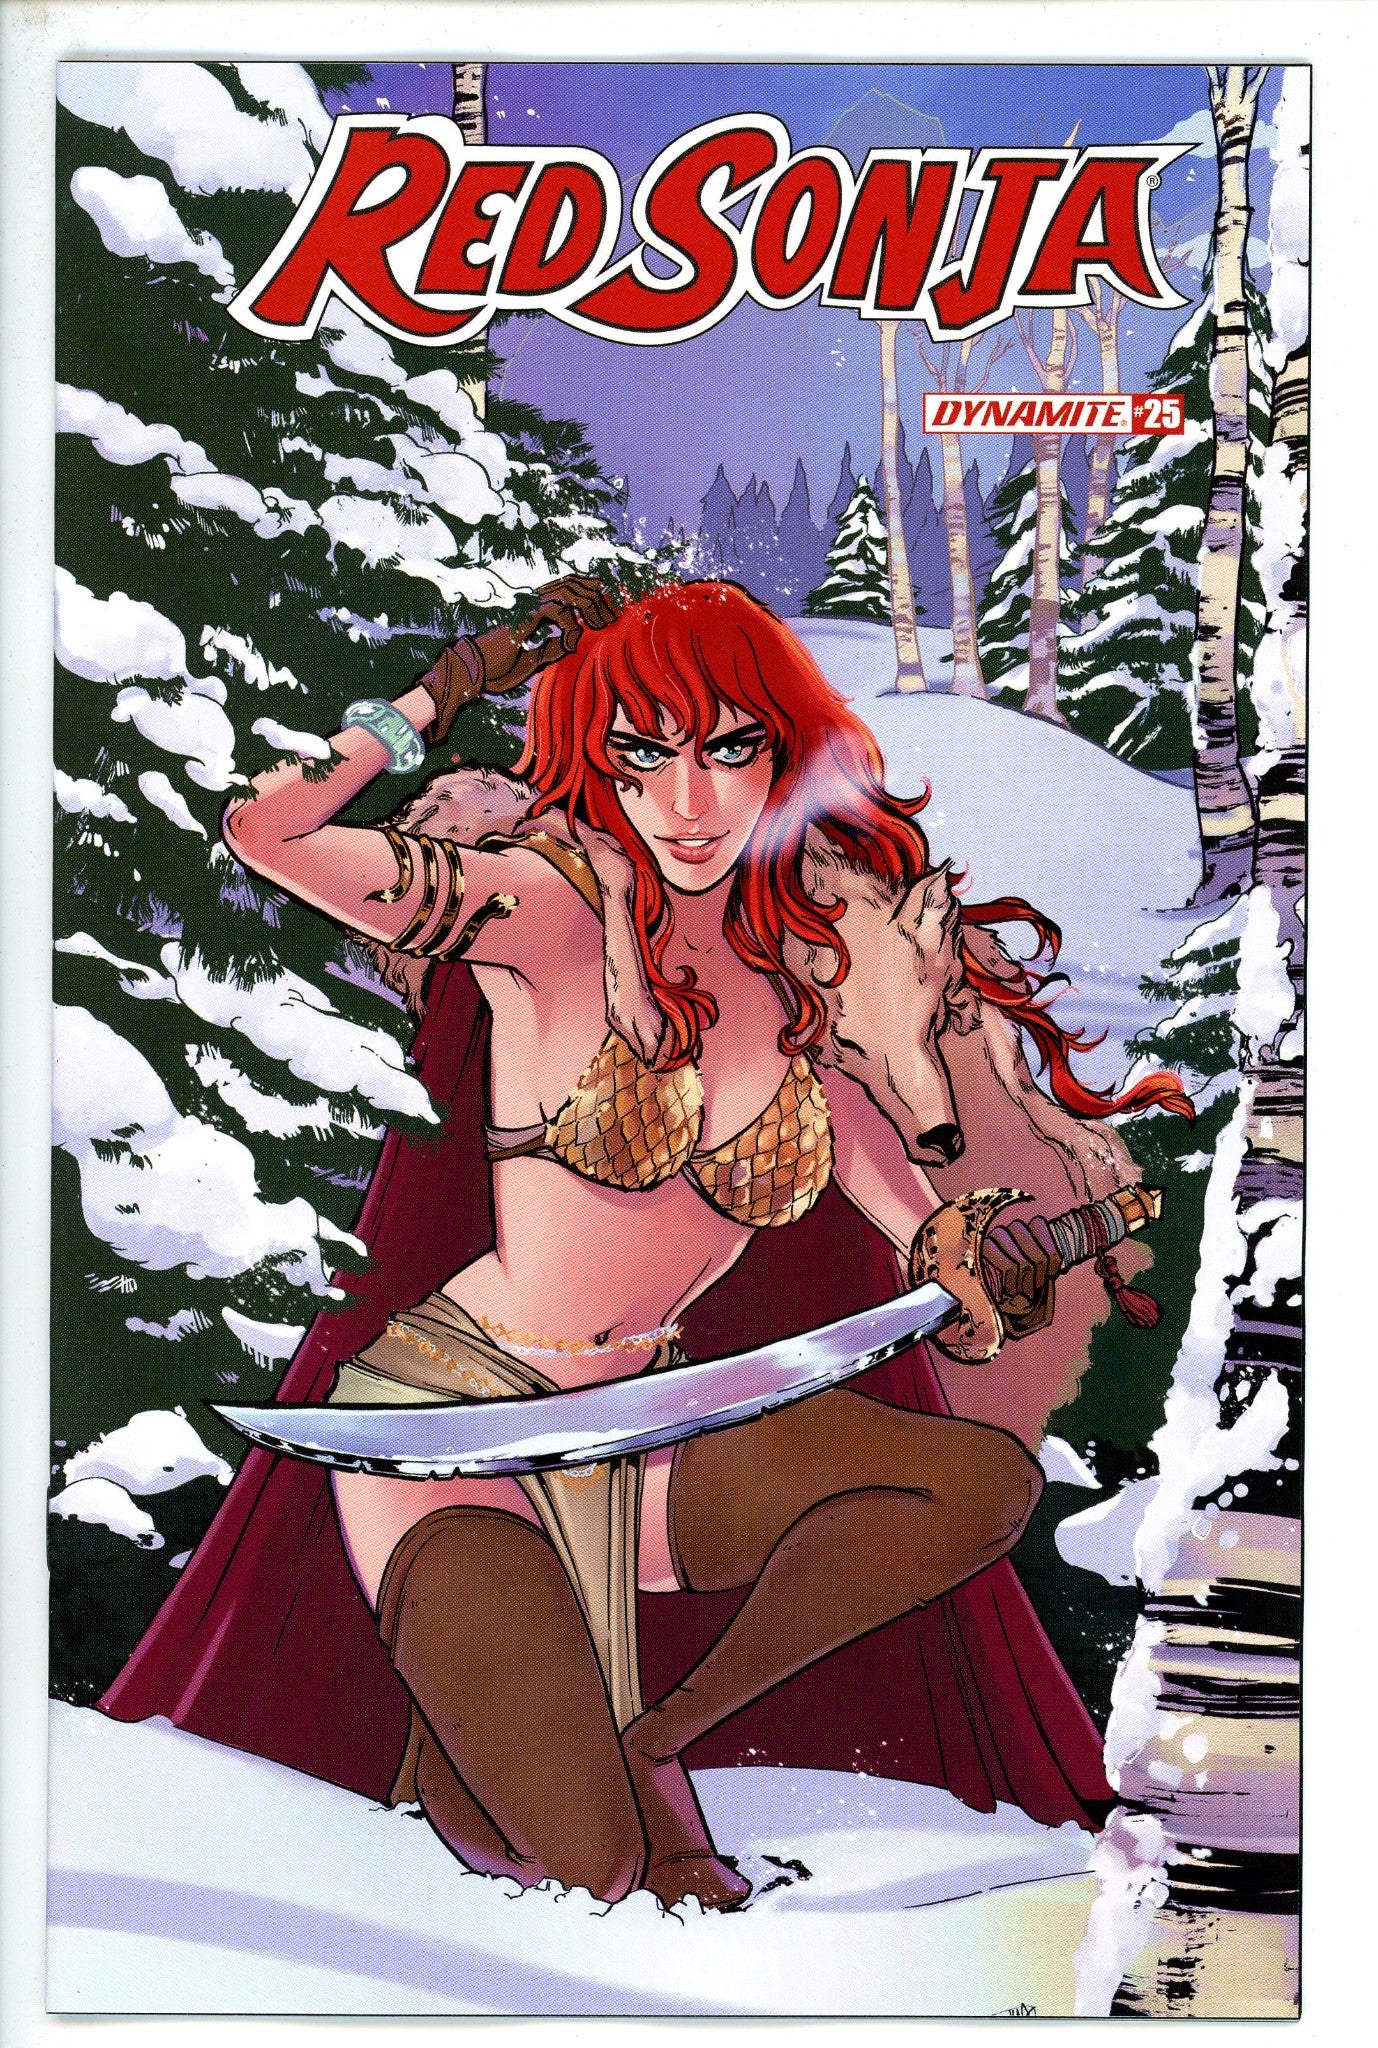 Red Sonja Vol 5 25 Anwar Variant-Dynamite-CaptCan Comics Inc